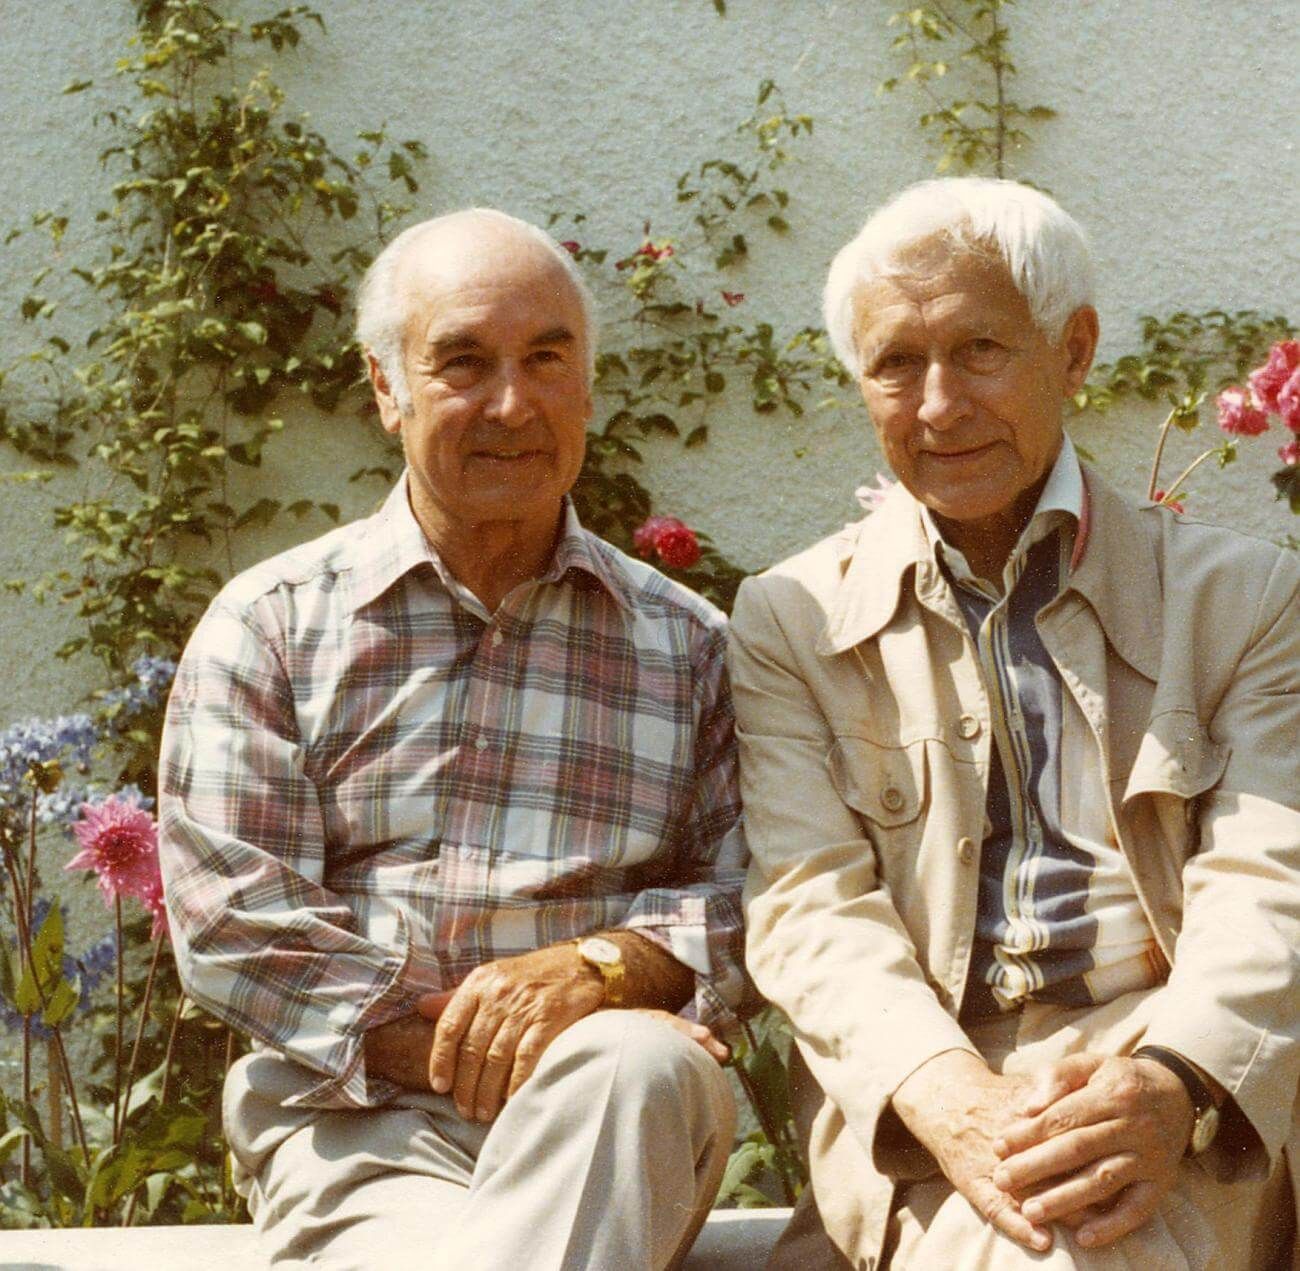 Швейцарский химик Альберт Хофманн и Эрнст Юнгер несколько раз вместе принимали ЛСД. Источник: barbadillo.it